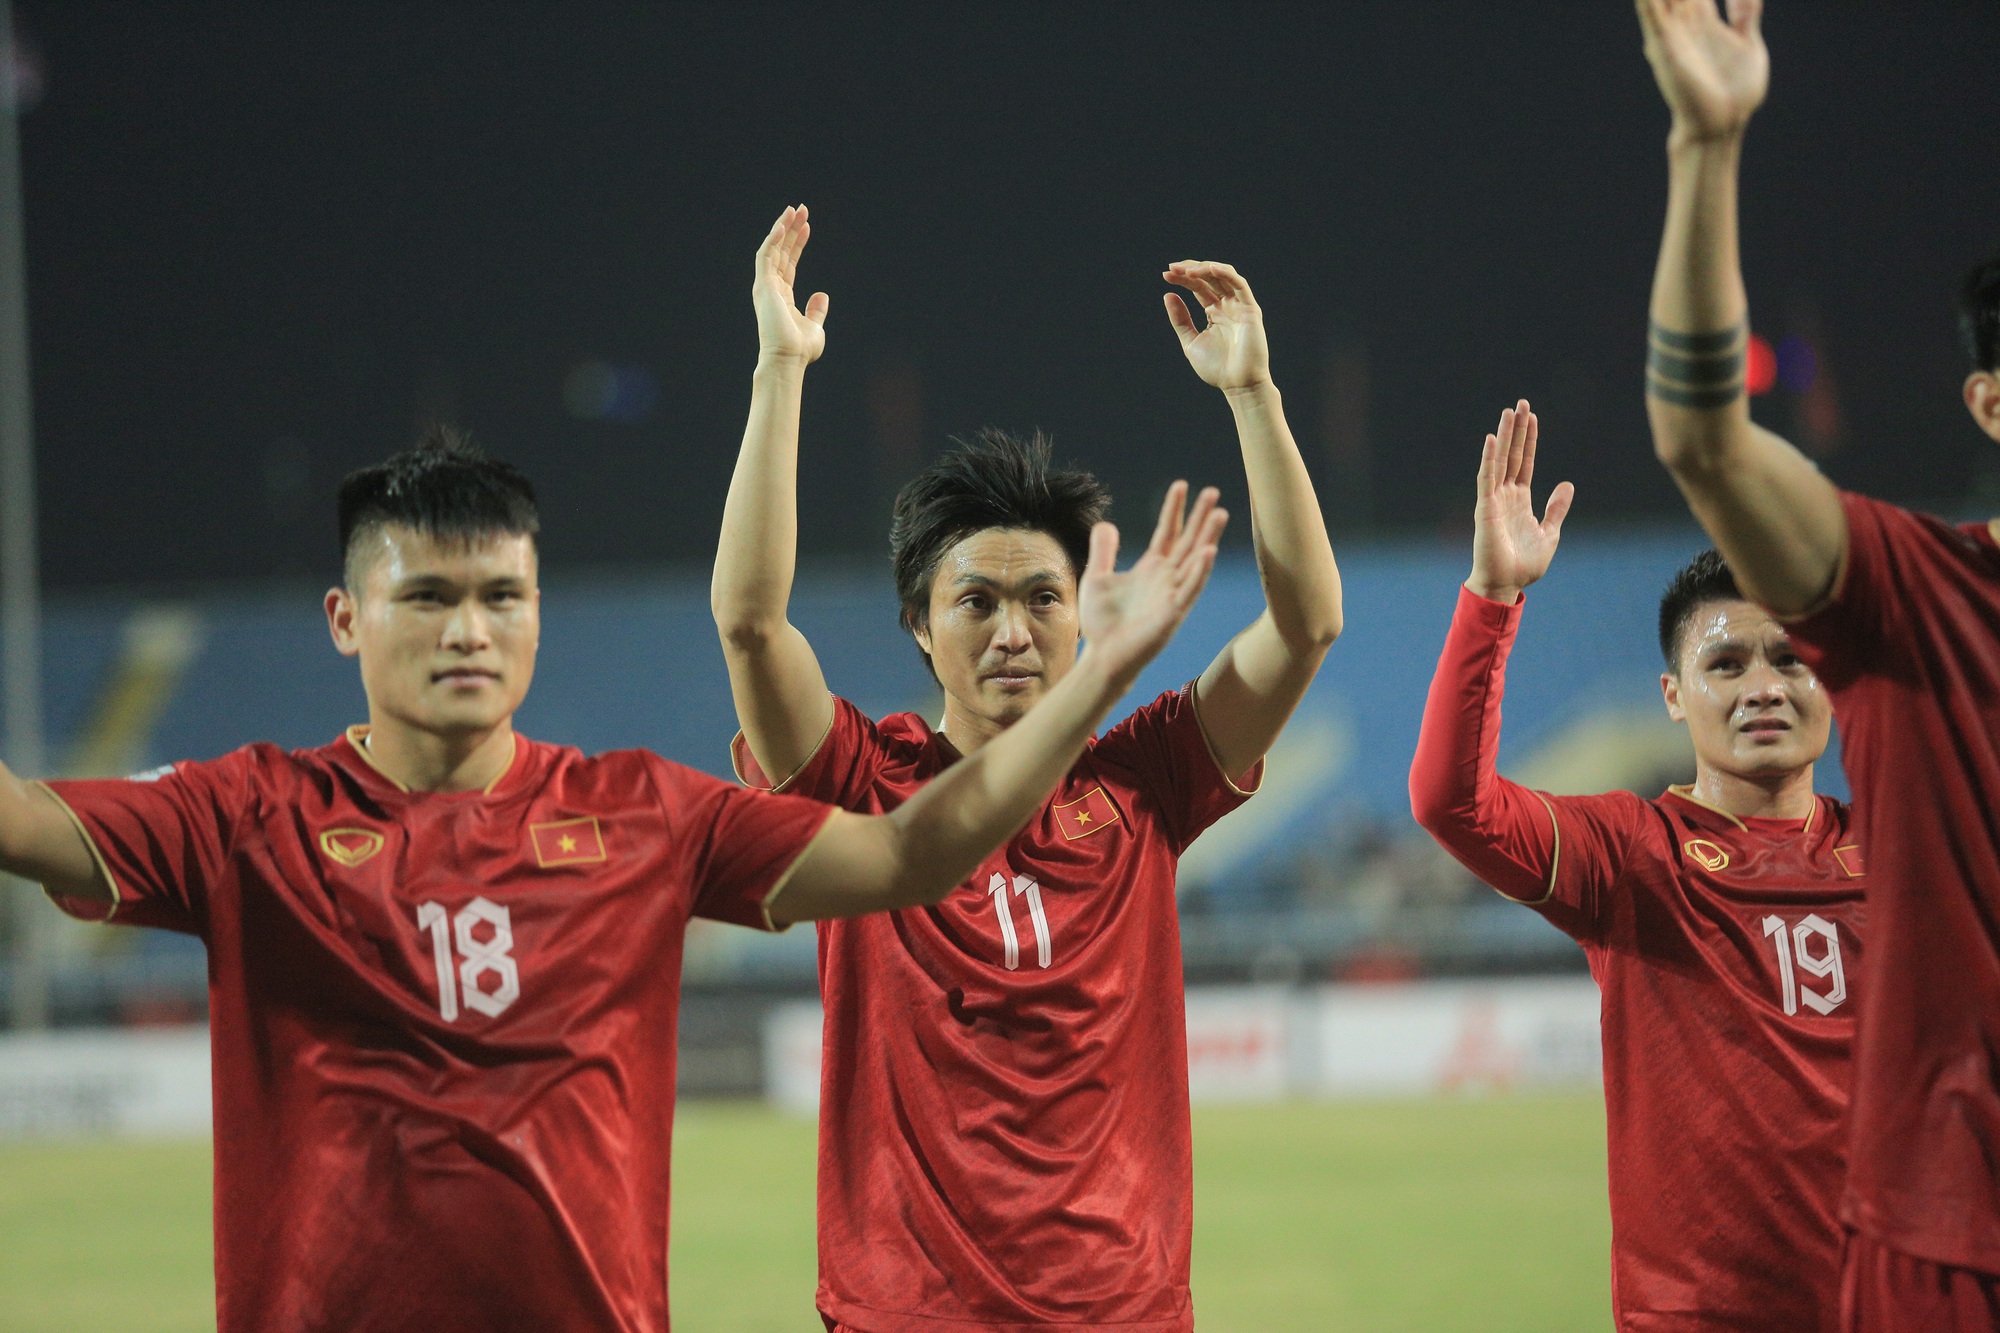 Quế Ngọc Hải ăn mừng theo phong cách của Ronaldo khi ghi bàn cho tuyển Việt Nam - Ảnh 7.